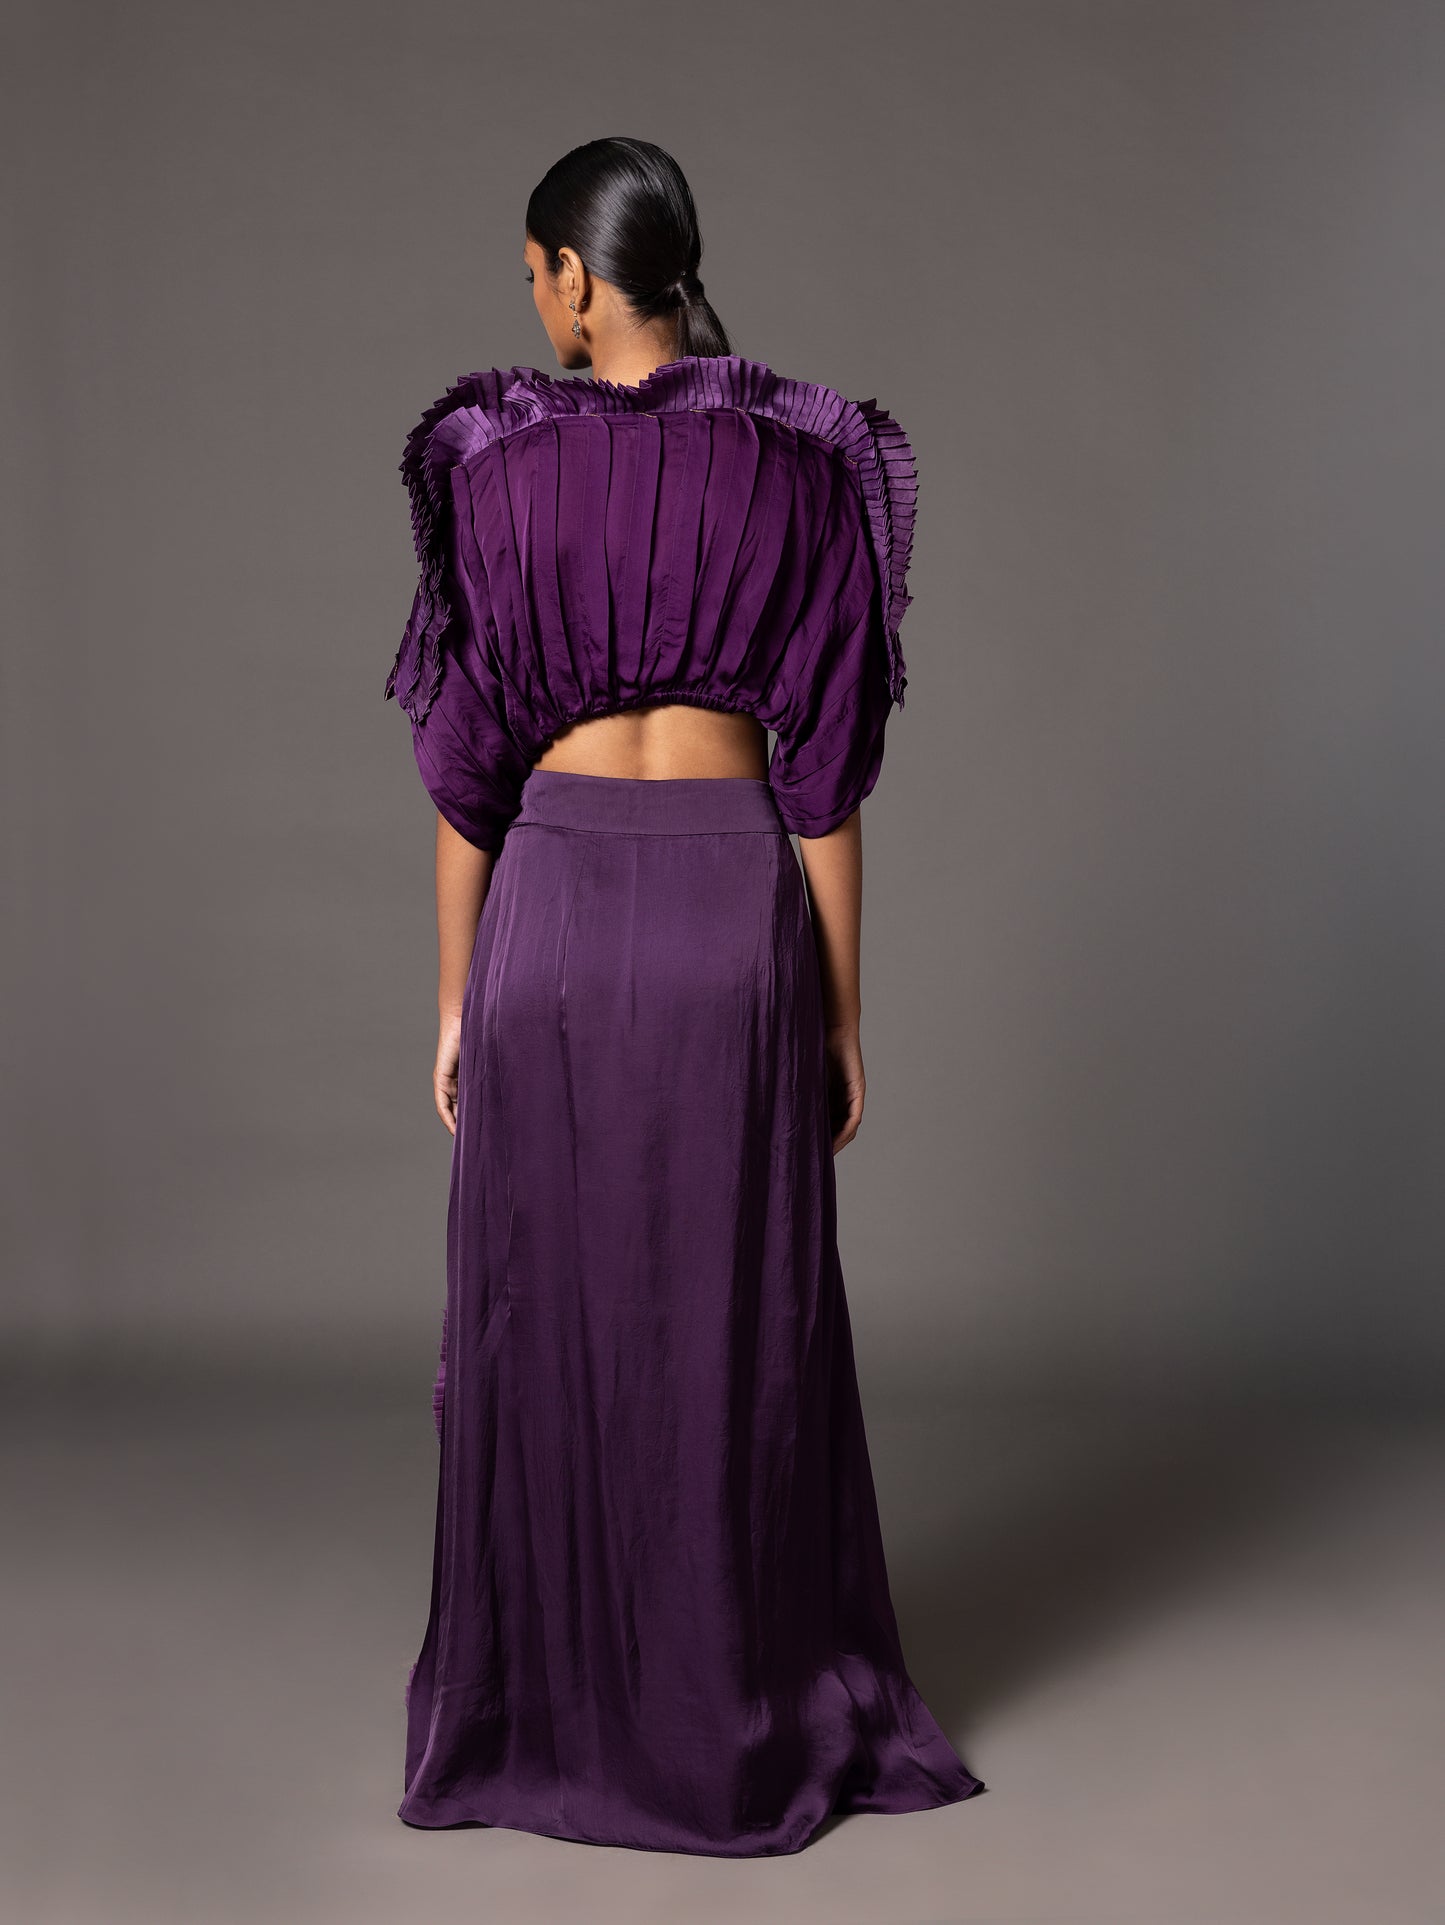 Purple Mushroom Top And Fin Skirt With Mushroom Belt